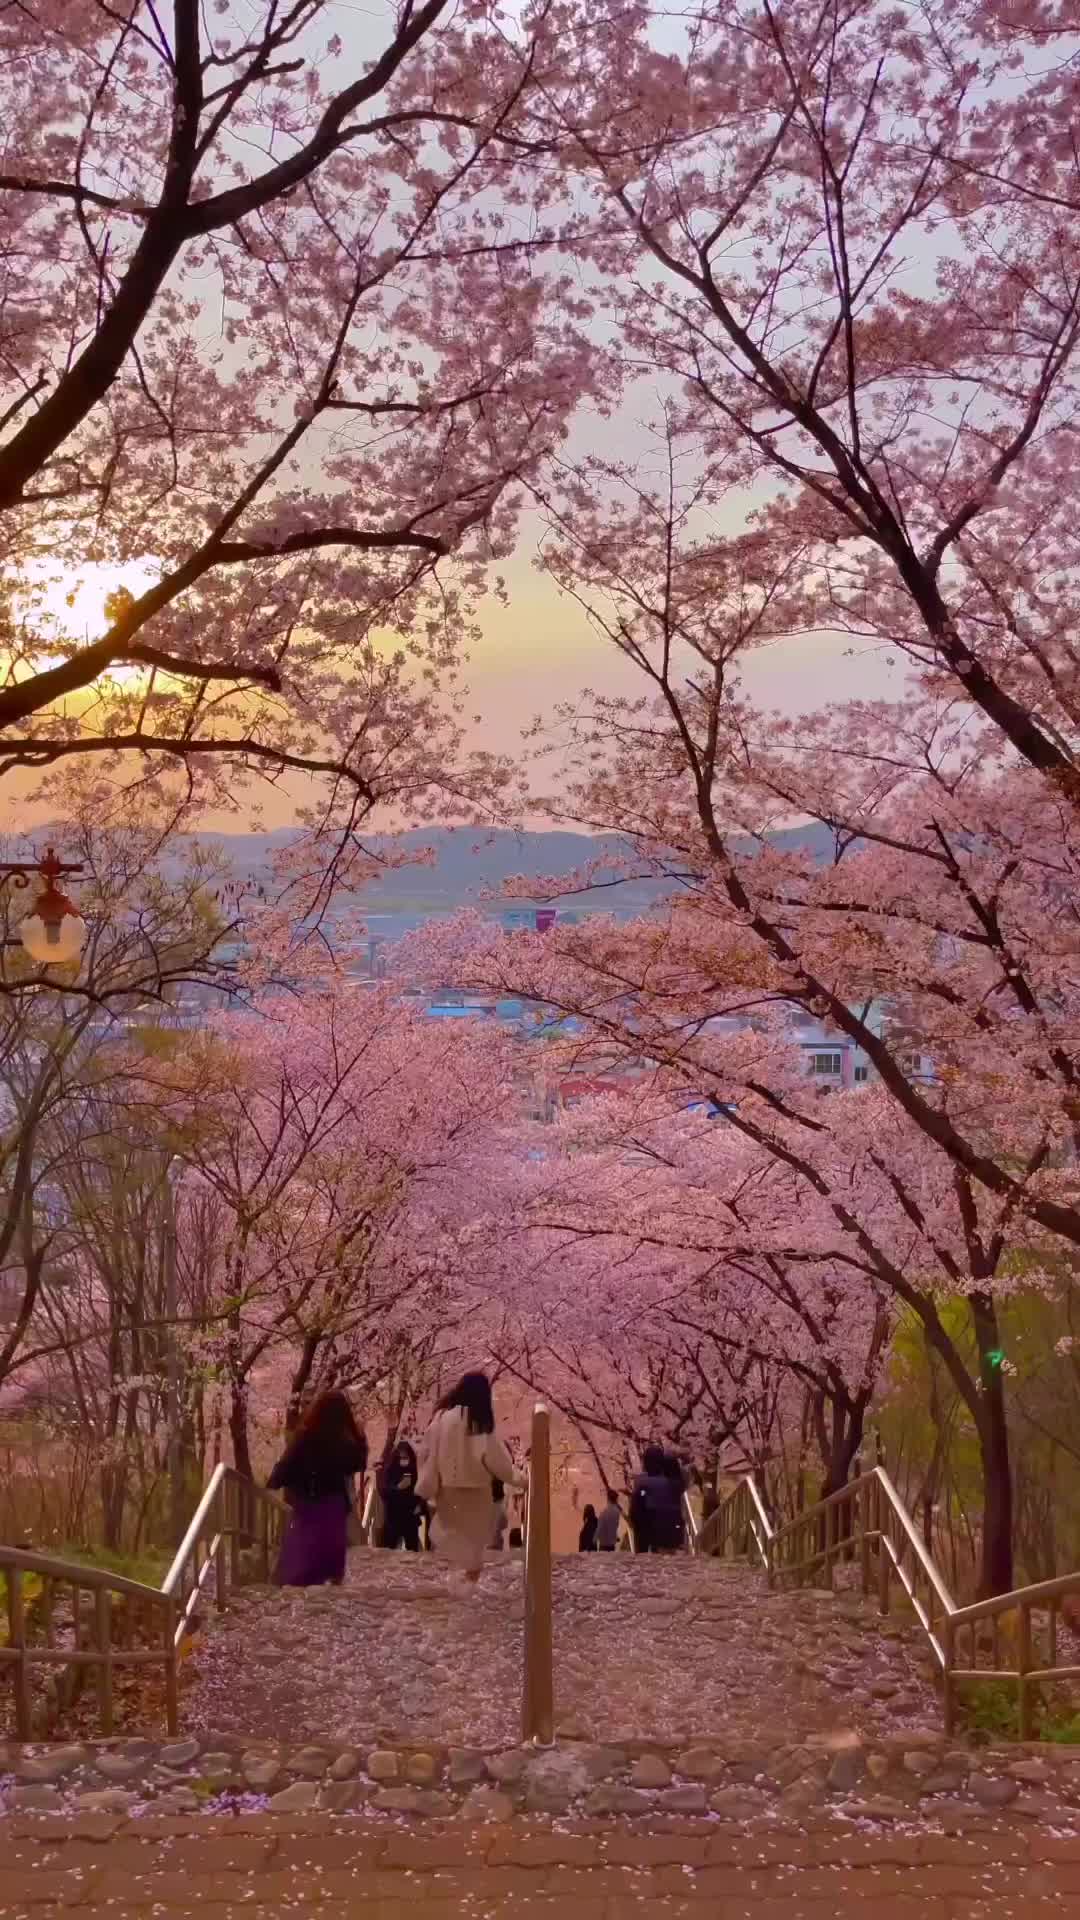 Romantic Cherry Blossom Rain at Daegu Chimsan Park